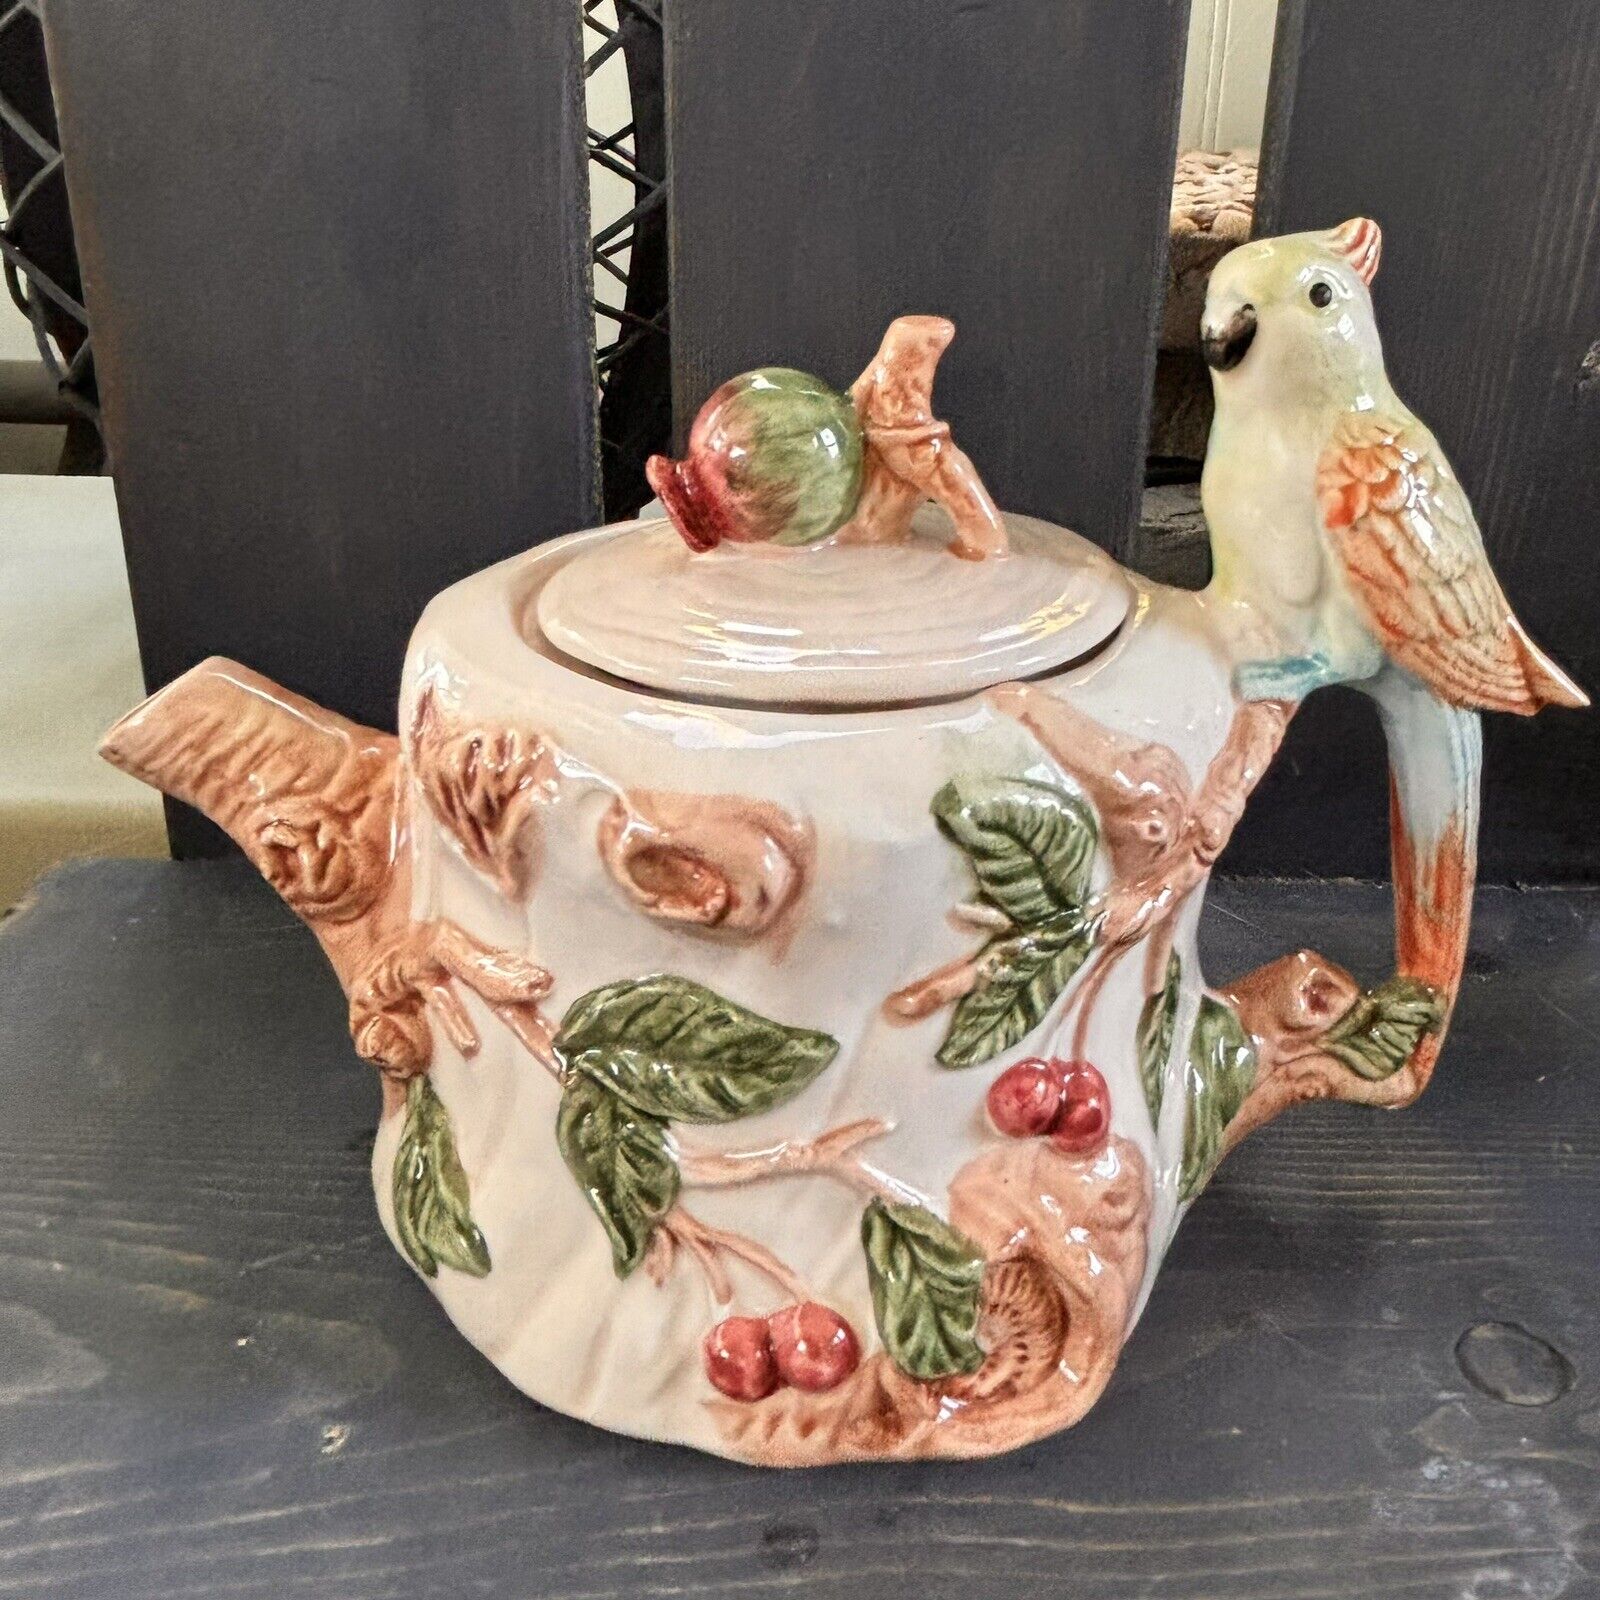 Vintage Teapot with Cockatoo on Handle - CBK Ltd 1991